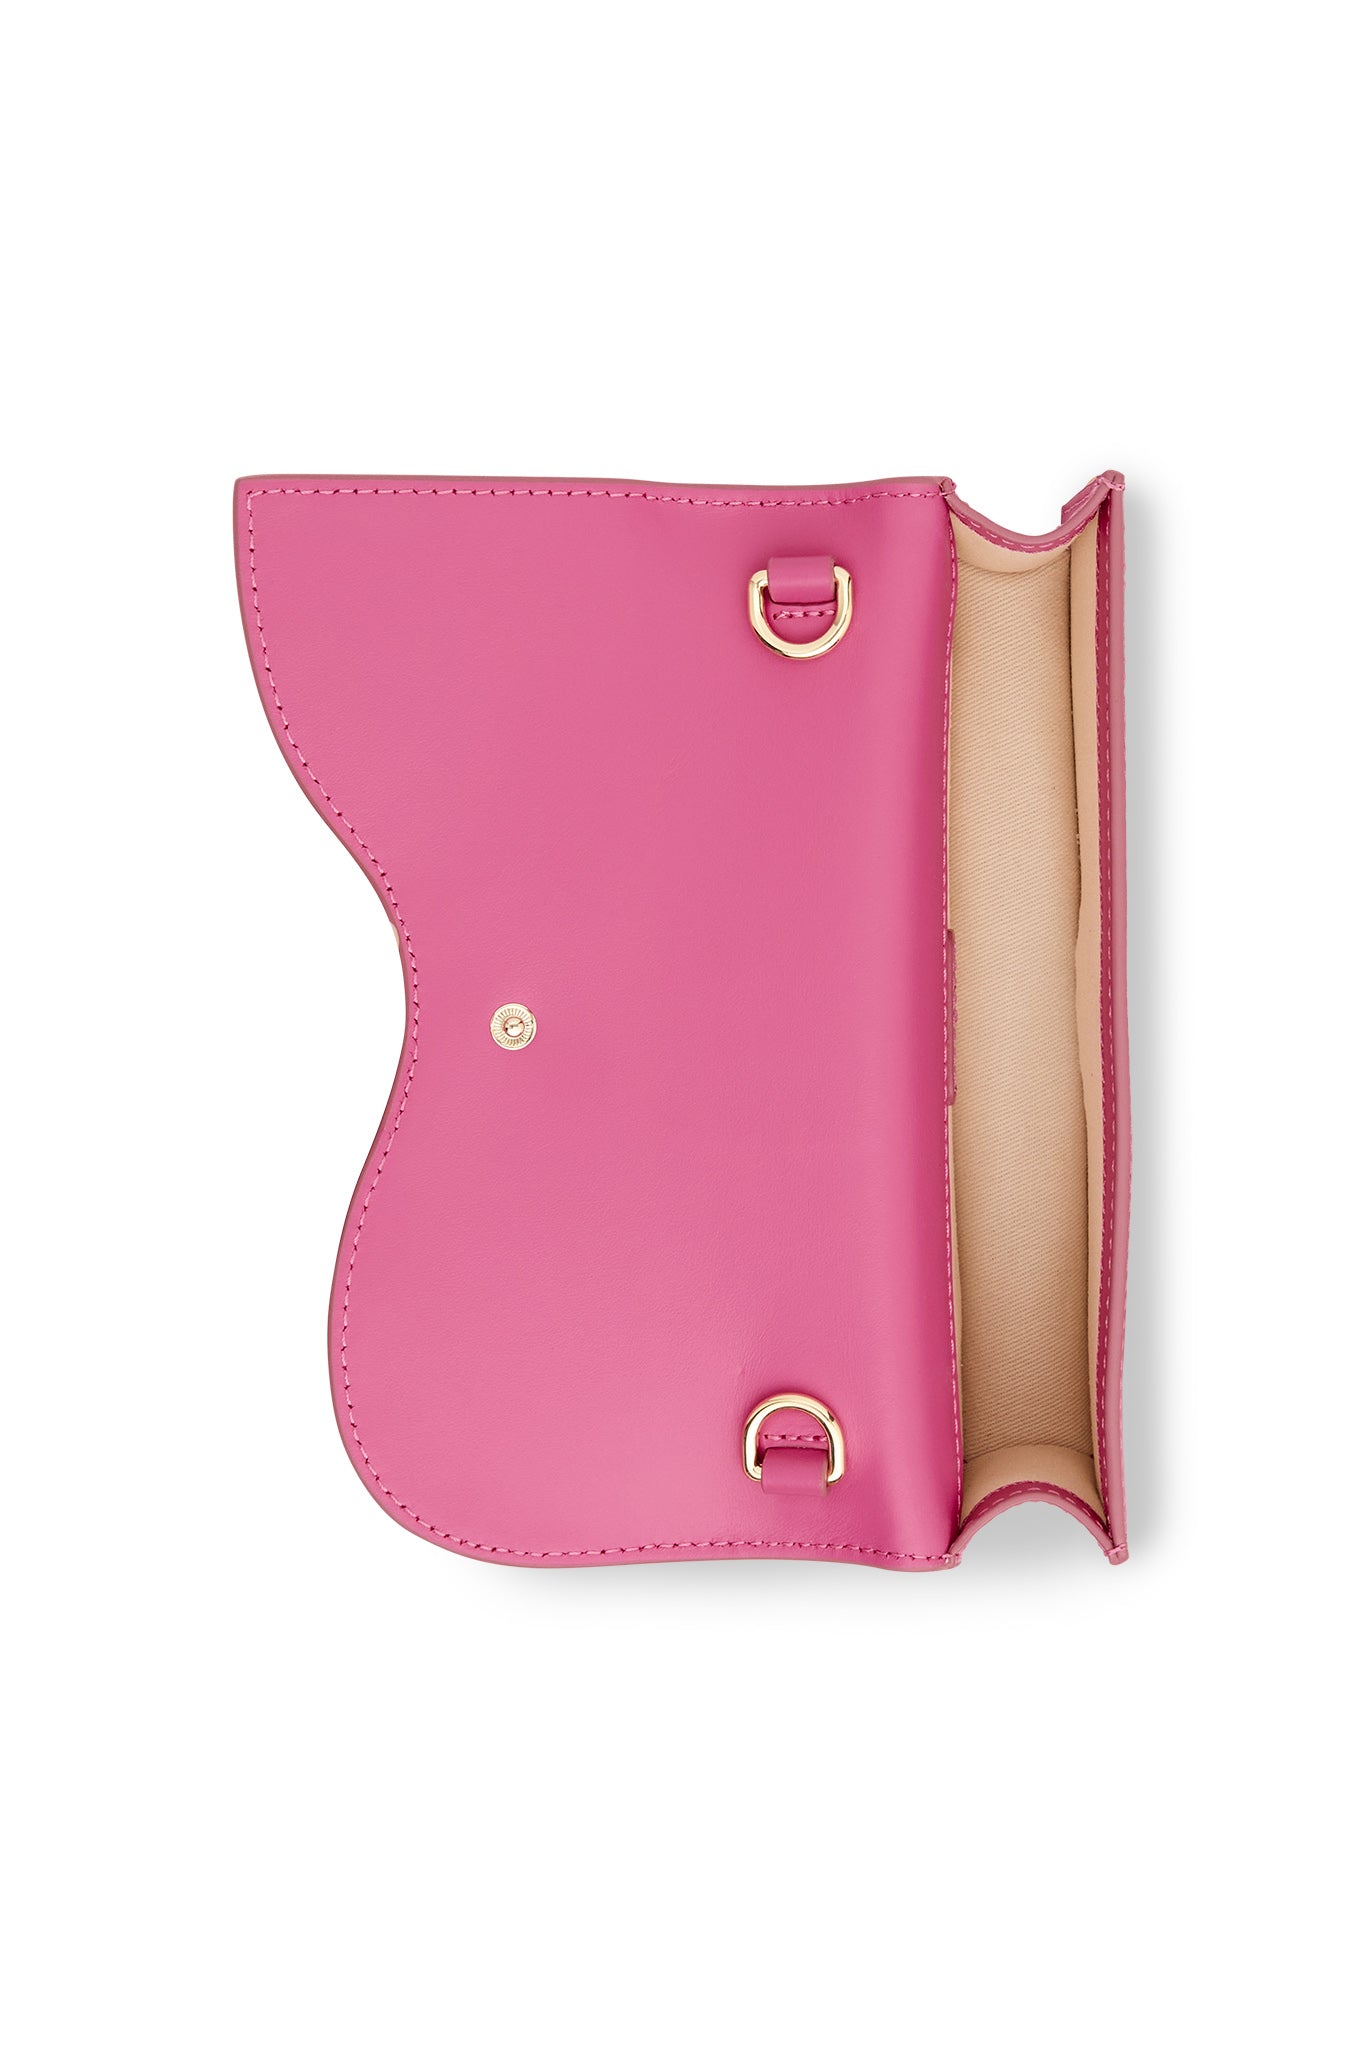 Nicola Twistlock Small Rococo Pink Shoulder Bag - Seven Season